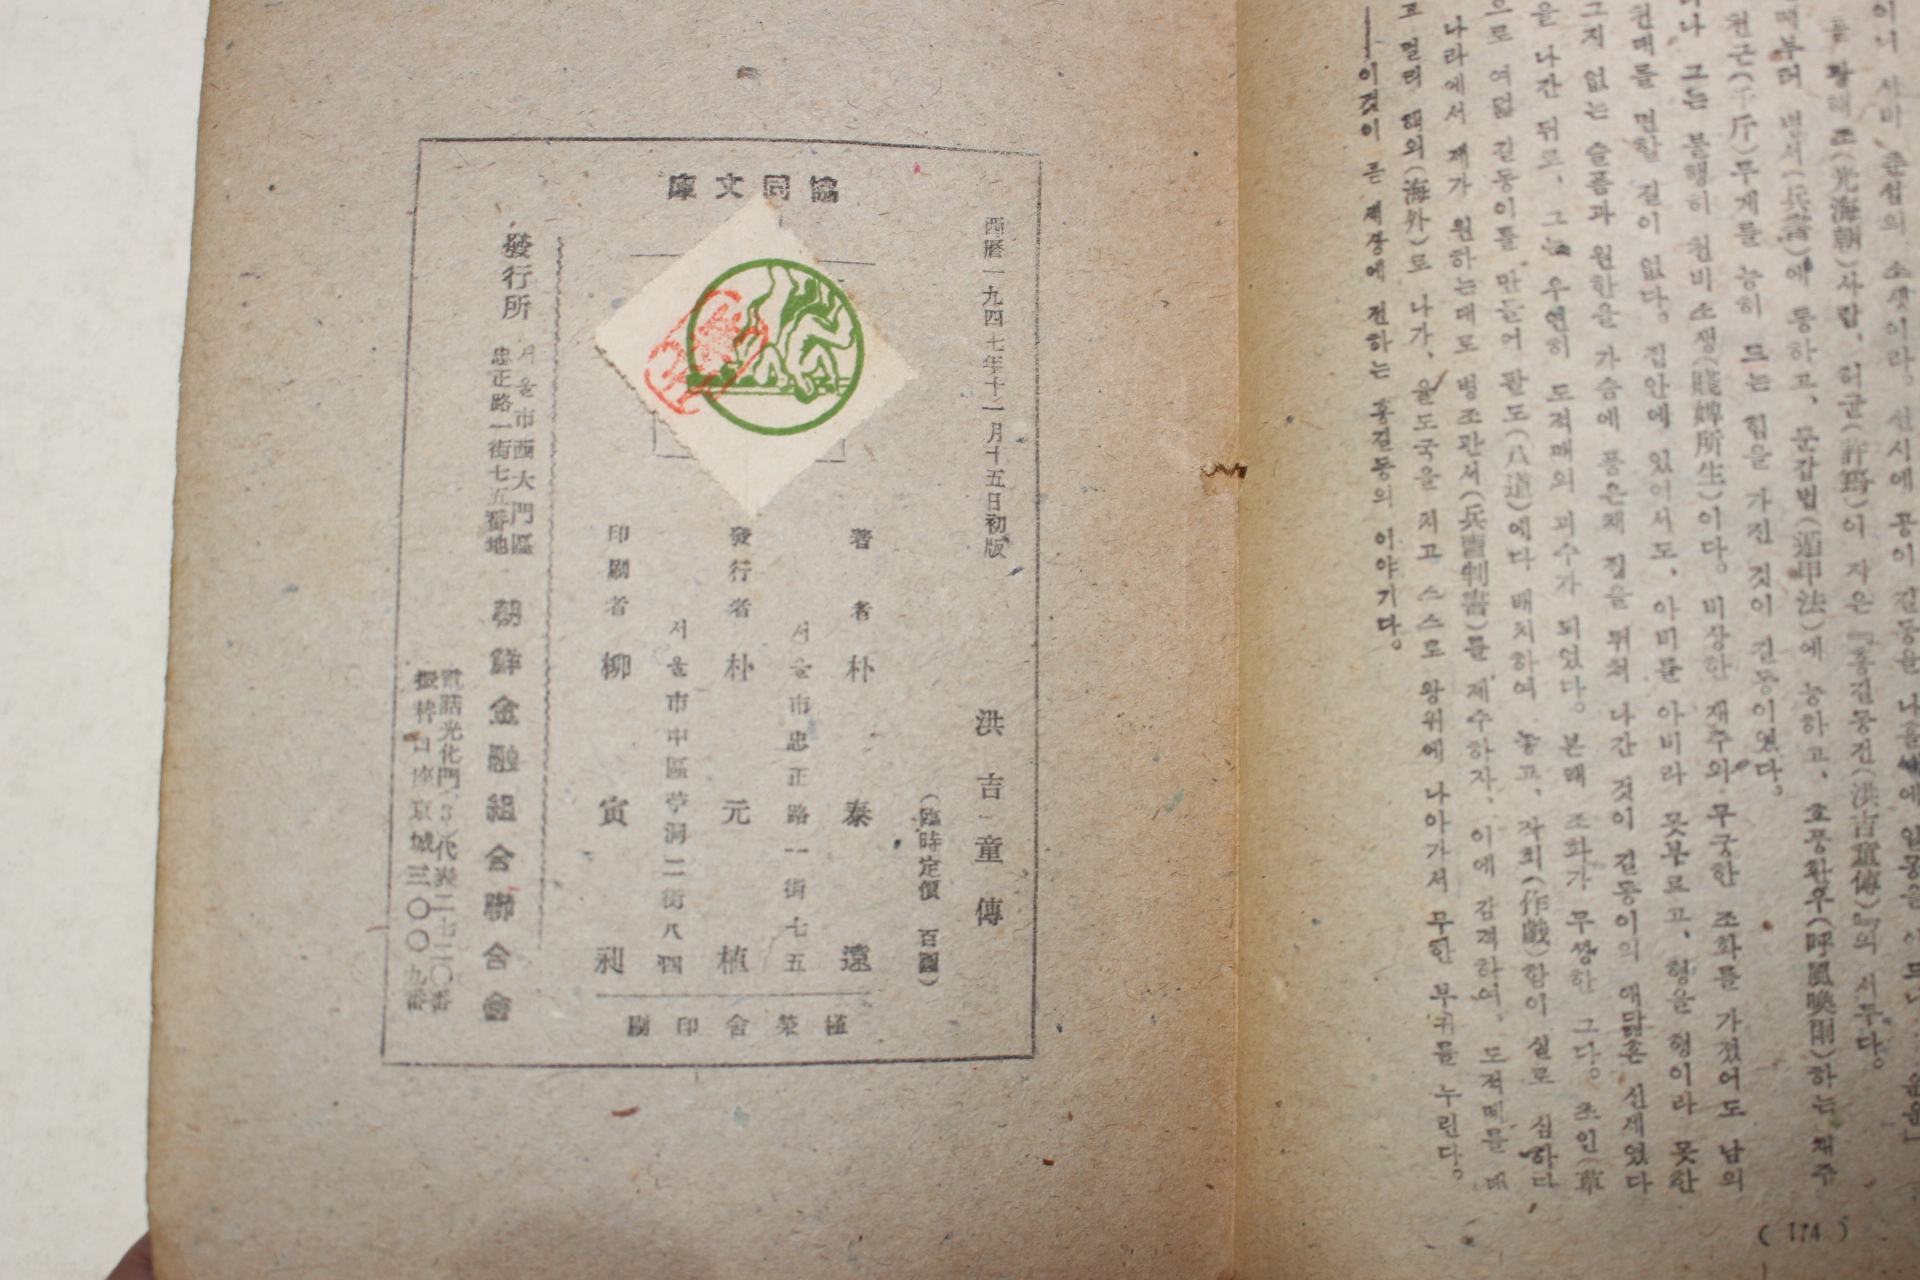 1947년 박태원(朴泰遠) 홍길동전(洪吉童傳)